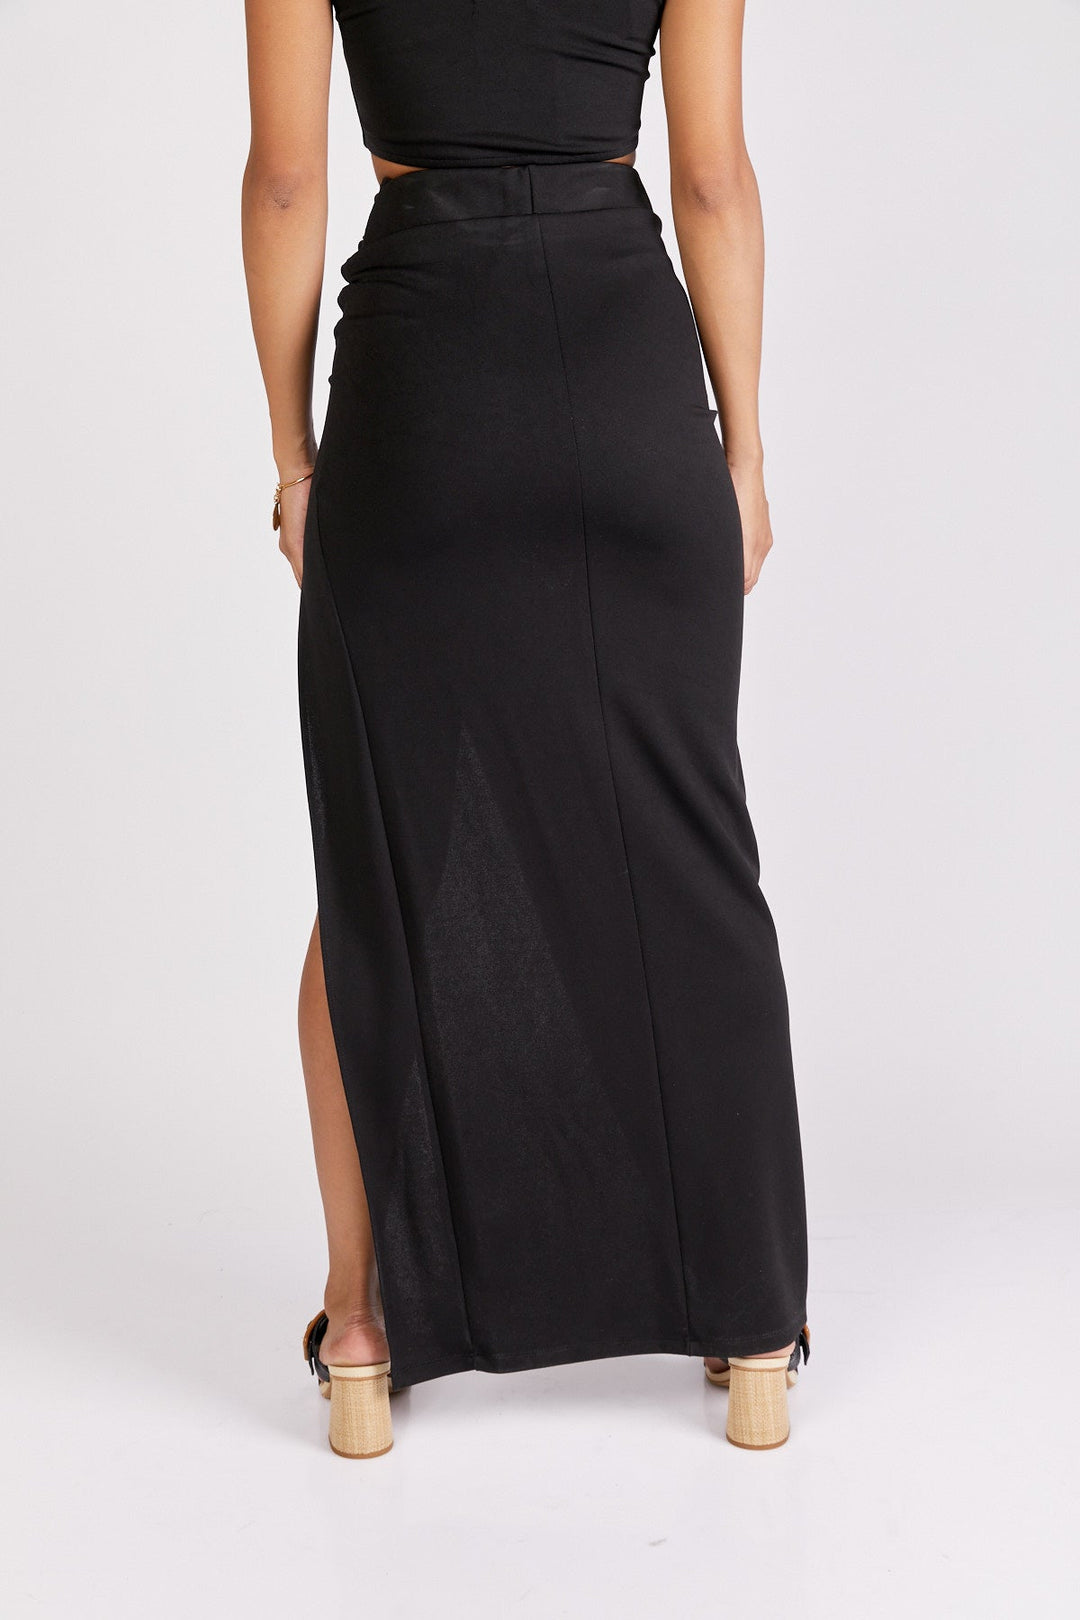 חצאית מקסי אדריאן בצבע שחור - Neta Efrati